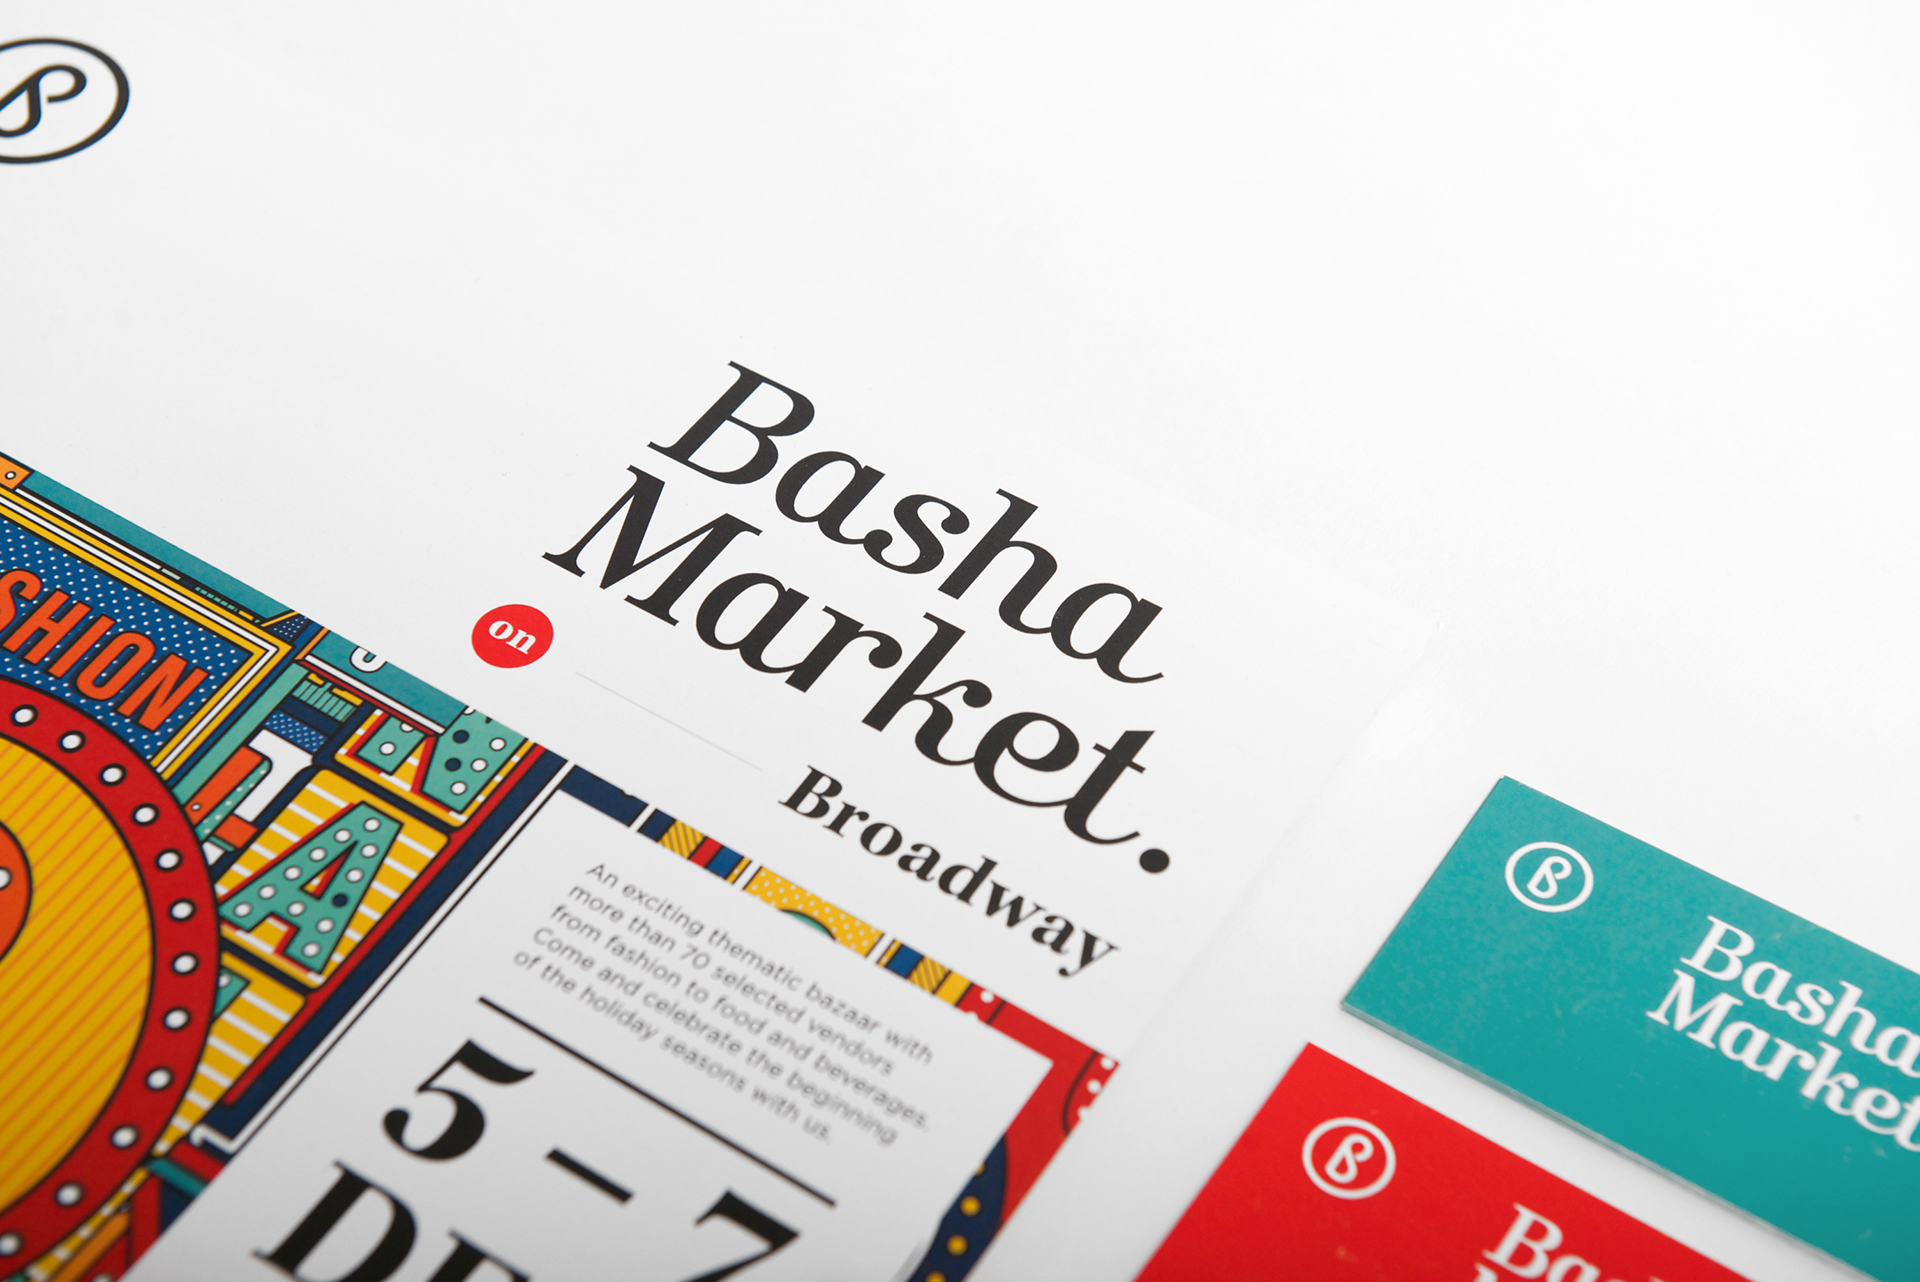 Basha Market on Broadway 01